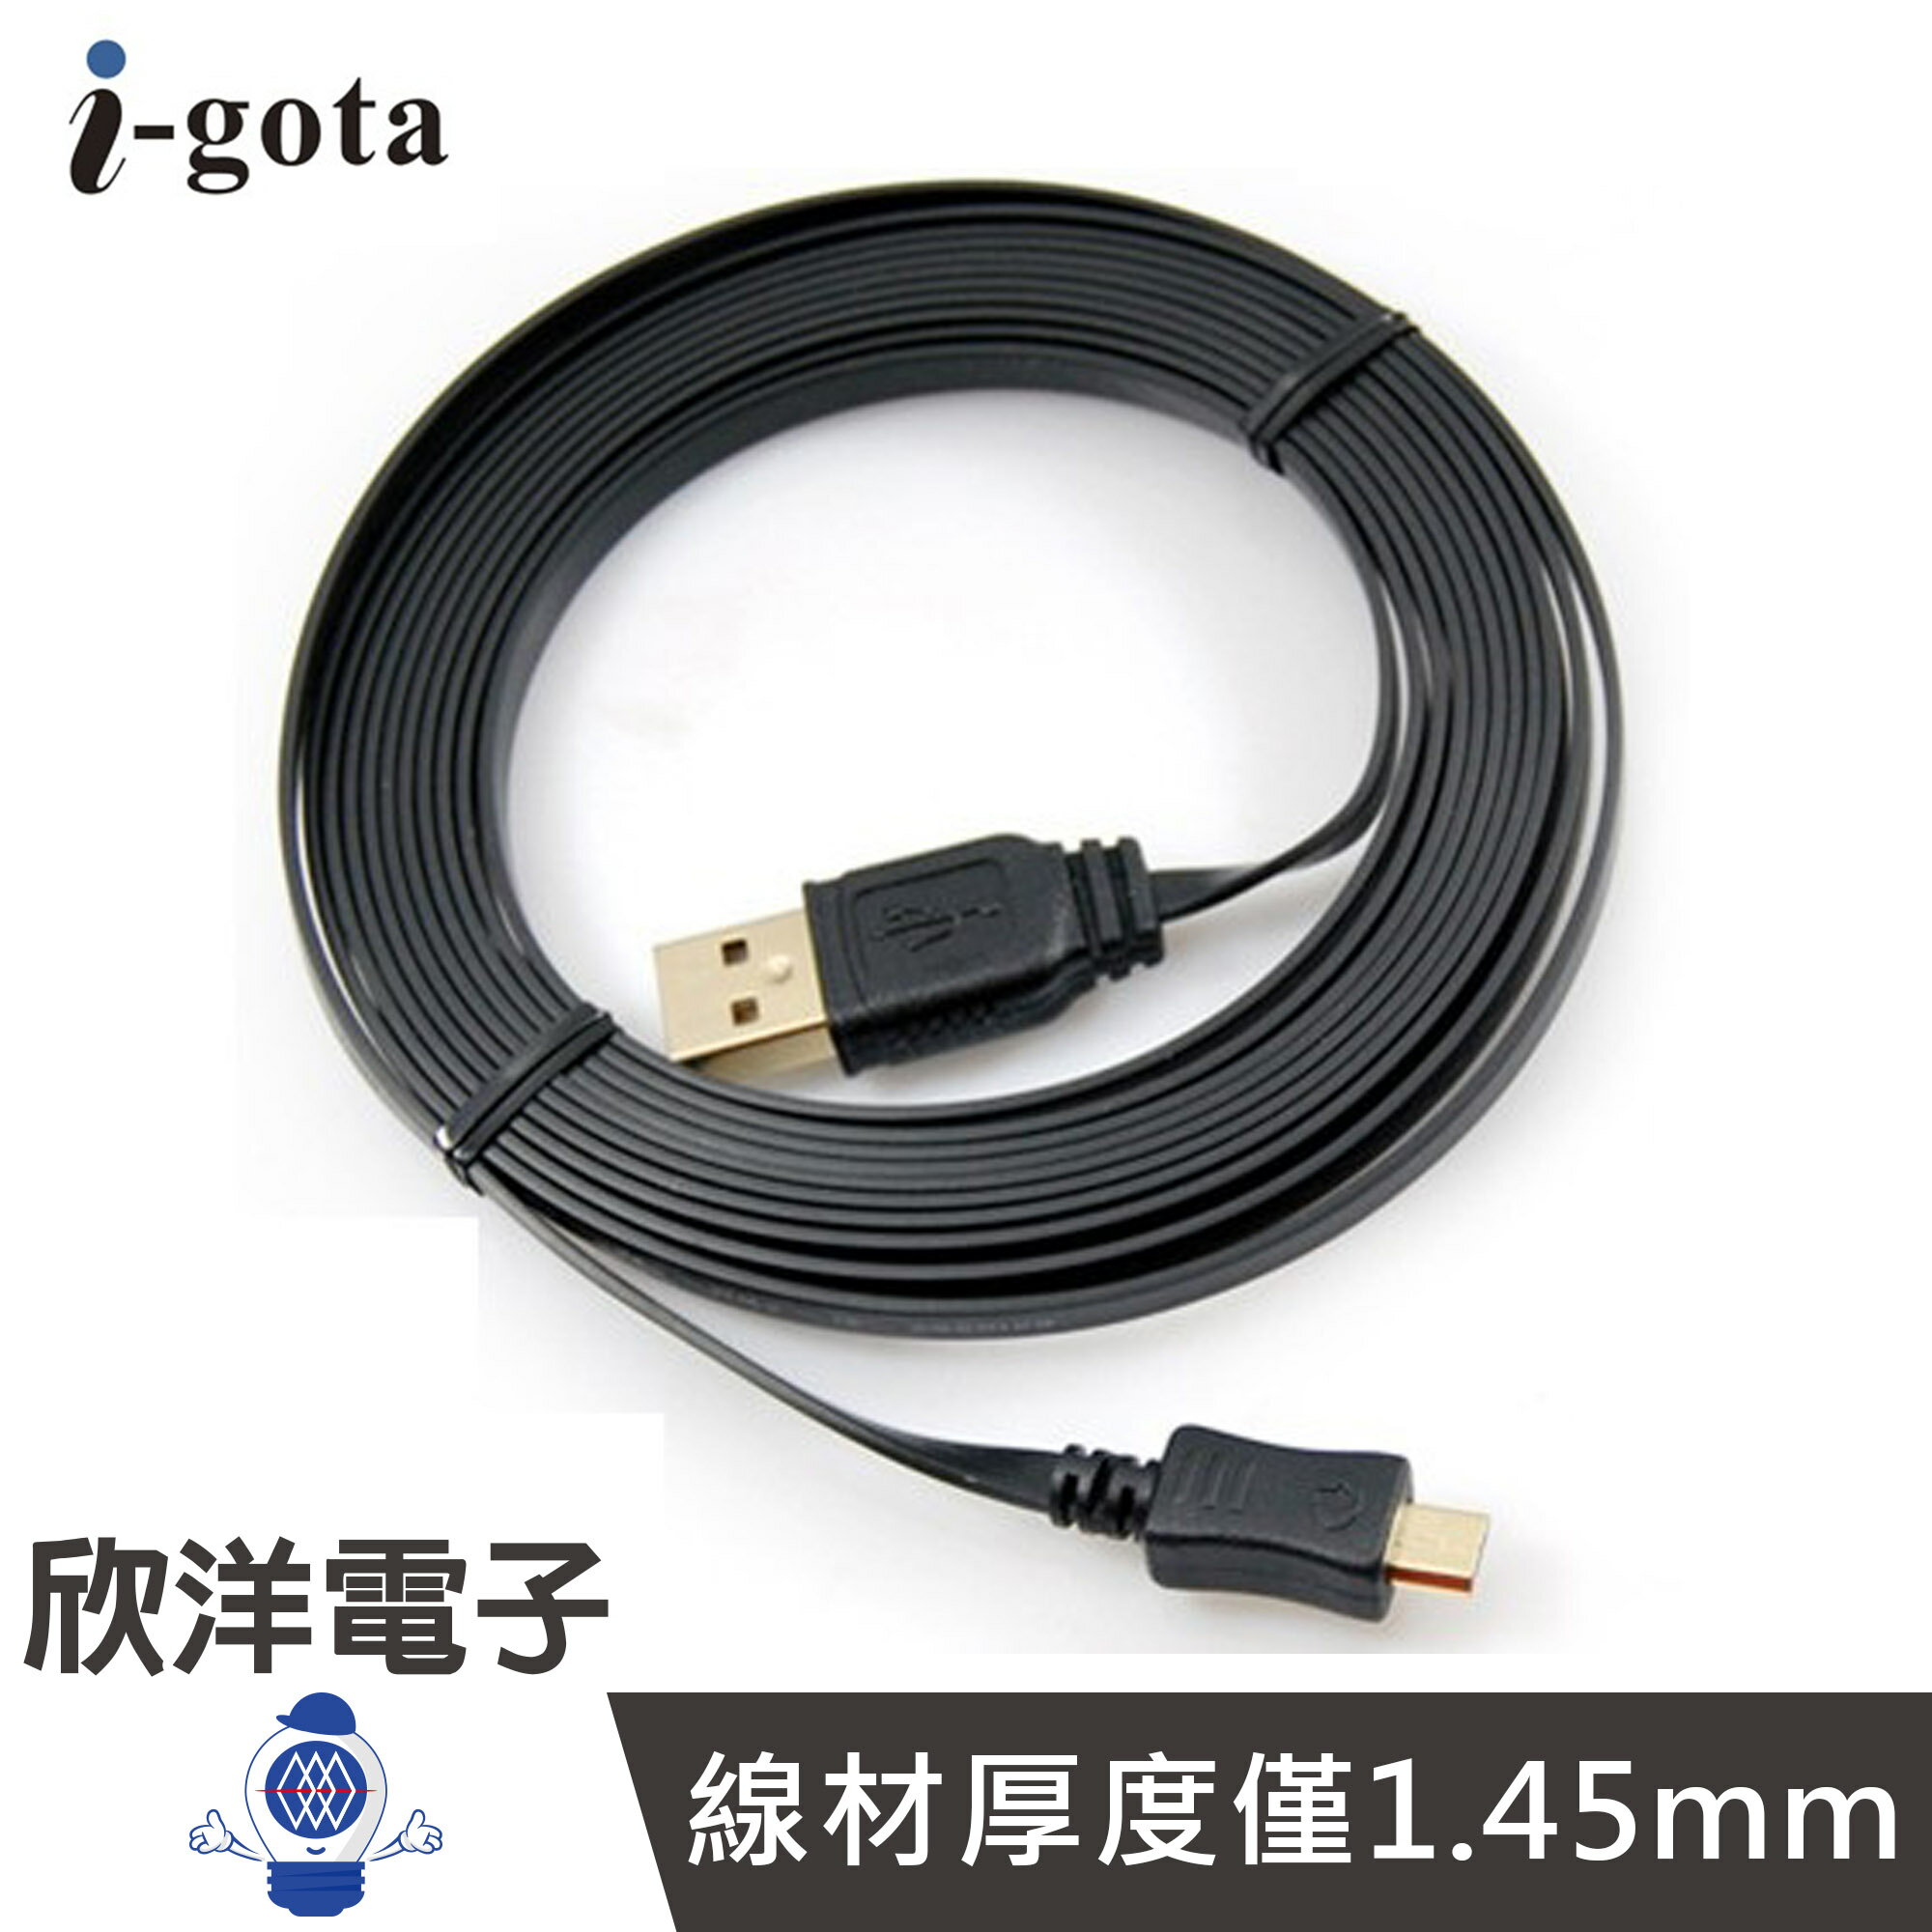 ※ 欣洋電子 ※ i-gota 超薄型USB 2.0 A公對Micro充電傳輸線(FUSB-AMC5PP02) 2M/2米/安卓